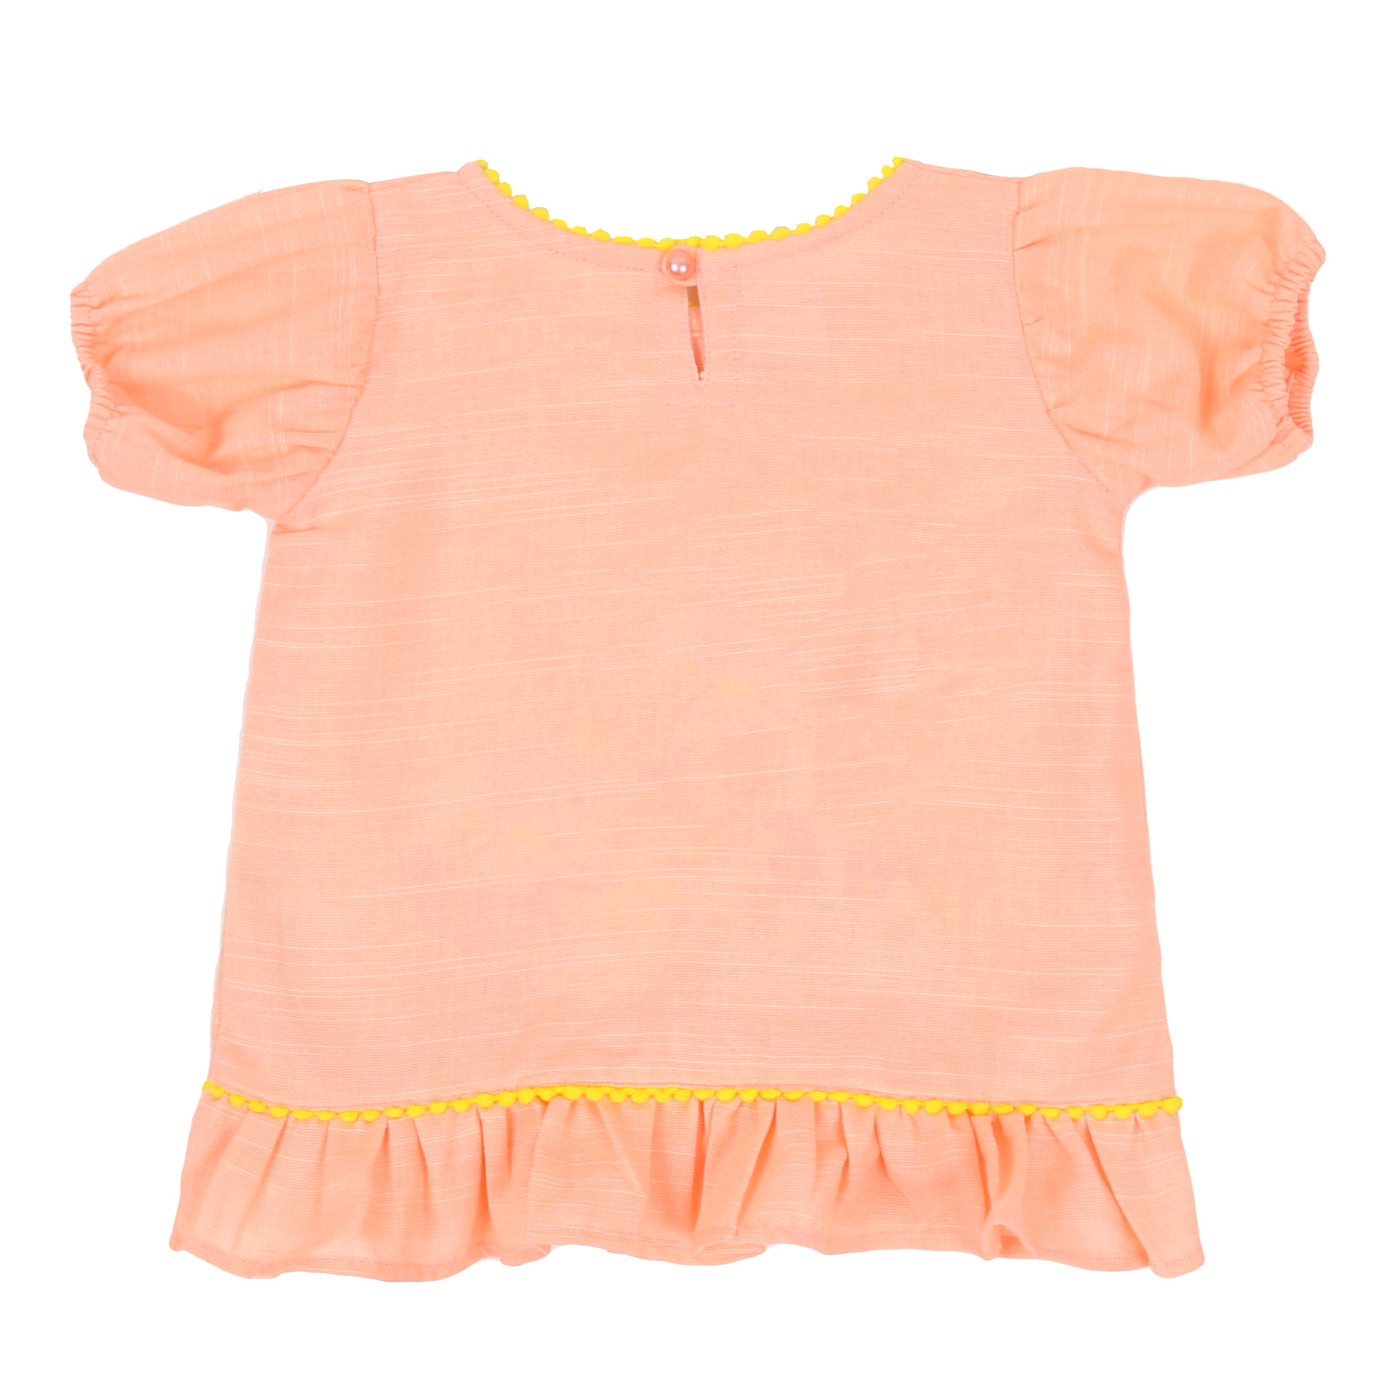 Infant Girls Embroidered Kurti Garden - Light Peach